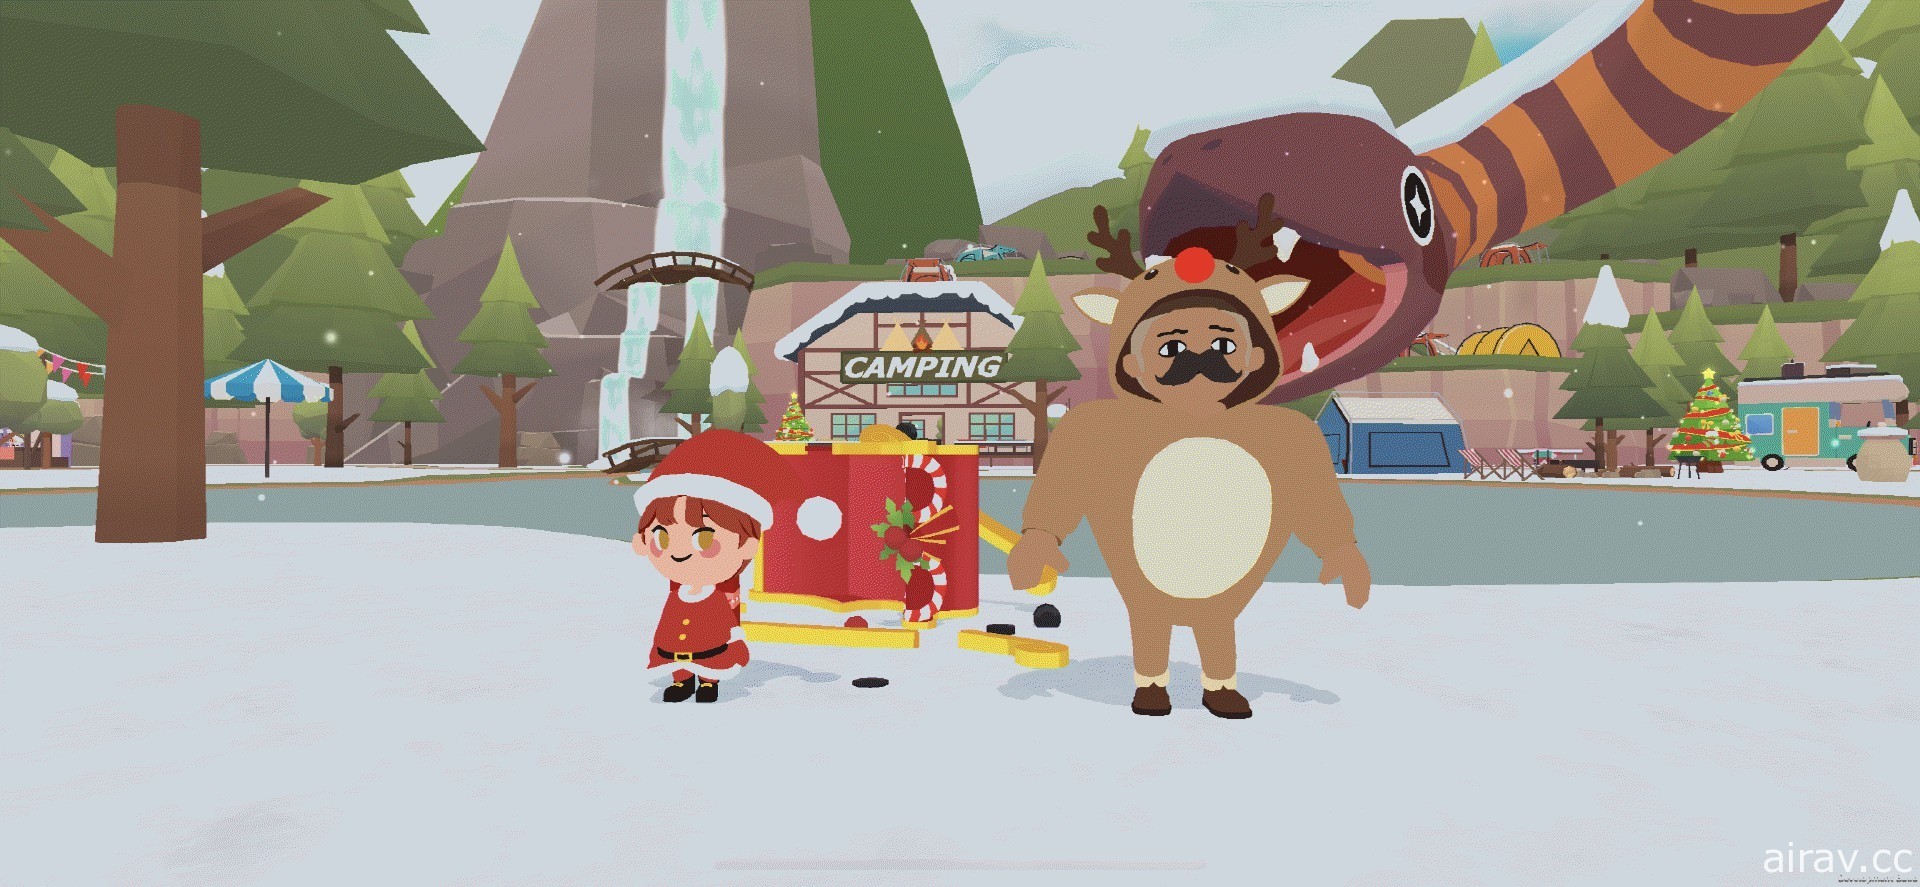 《天天玩樂園》推出聖誕節大型改版 多種聖誕節風格道具登場